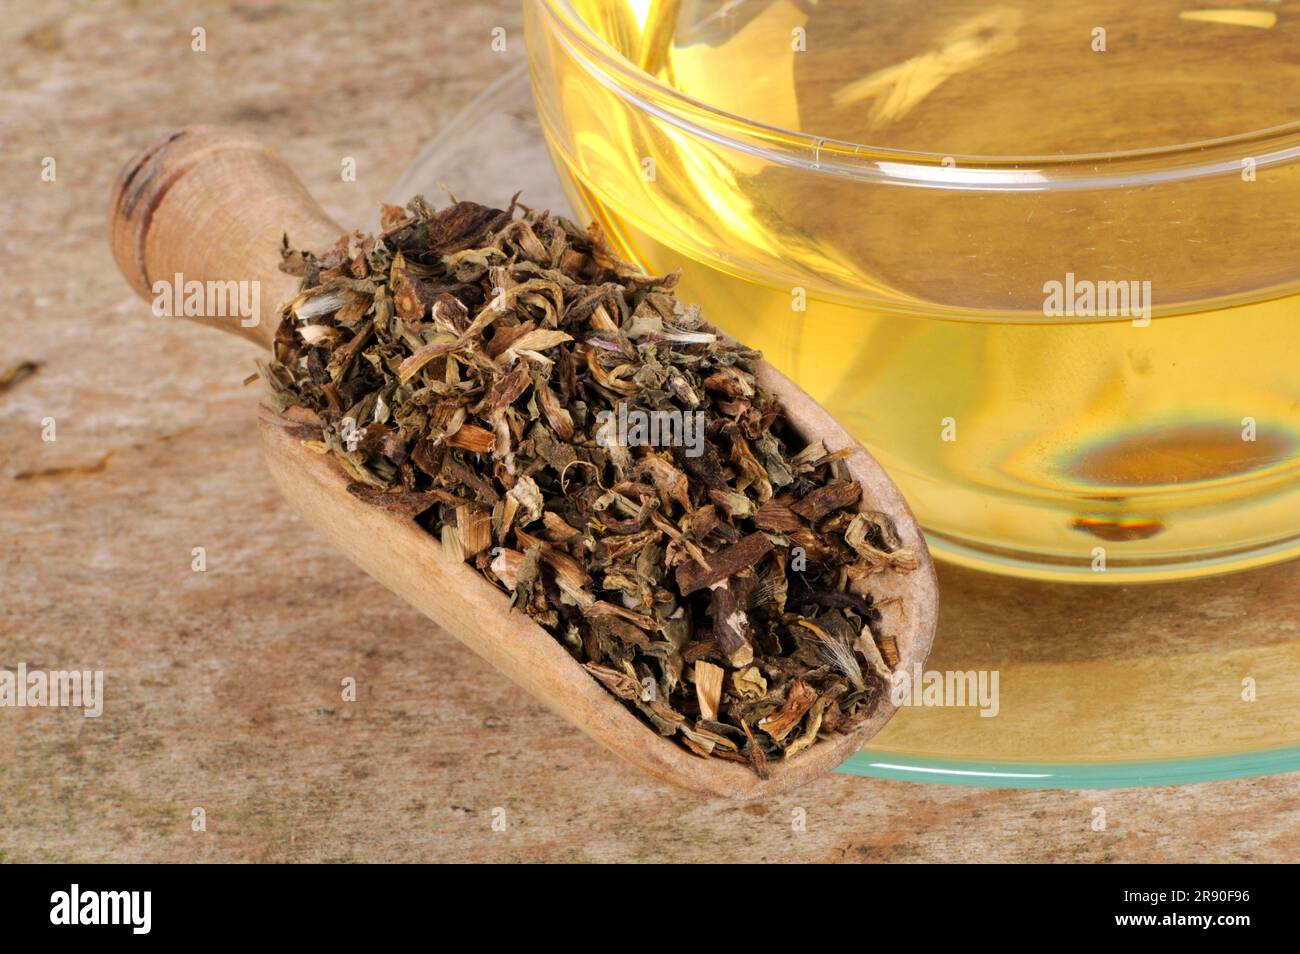 Mongolian Dandelion Herb, Cup of Dandelion Herb Tea (Taraxaci Herba), Pu Gong Ying, Dandelion Herb Tea, Loew Dandelion Herb Tea Stock Photo